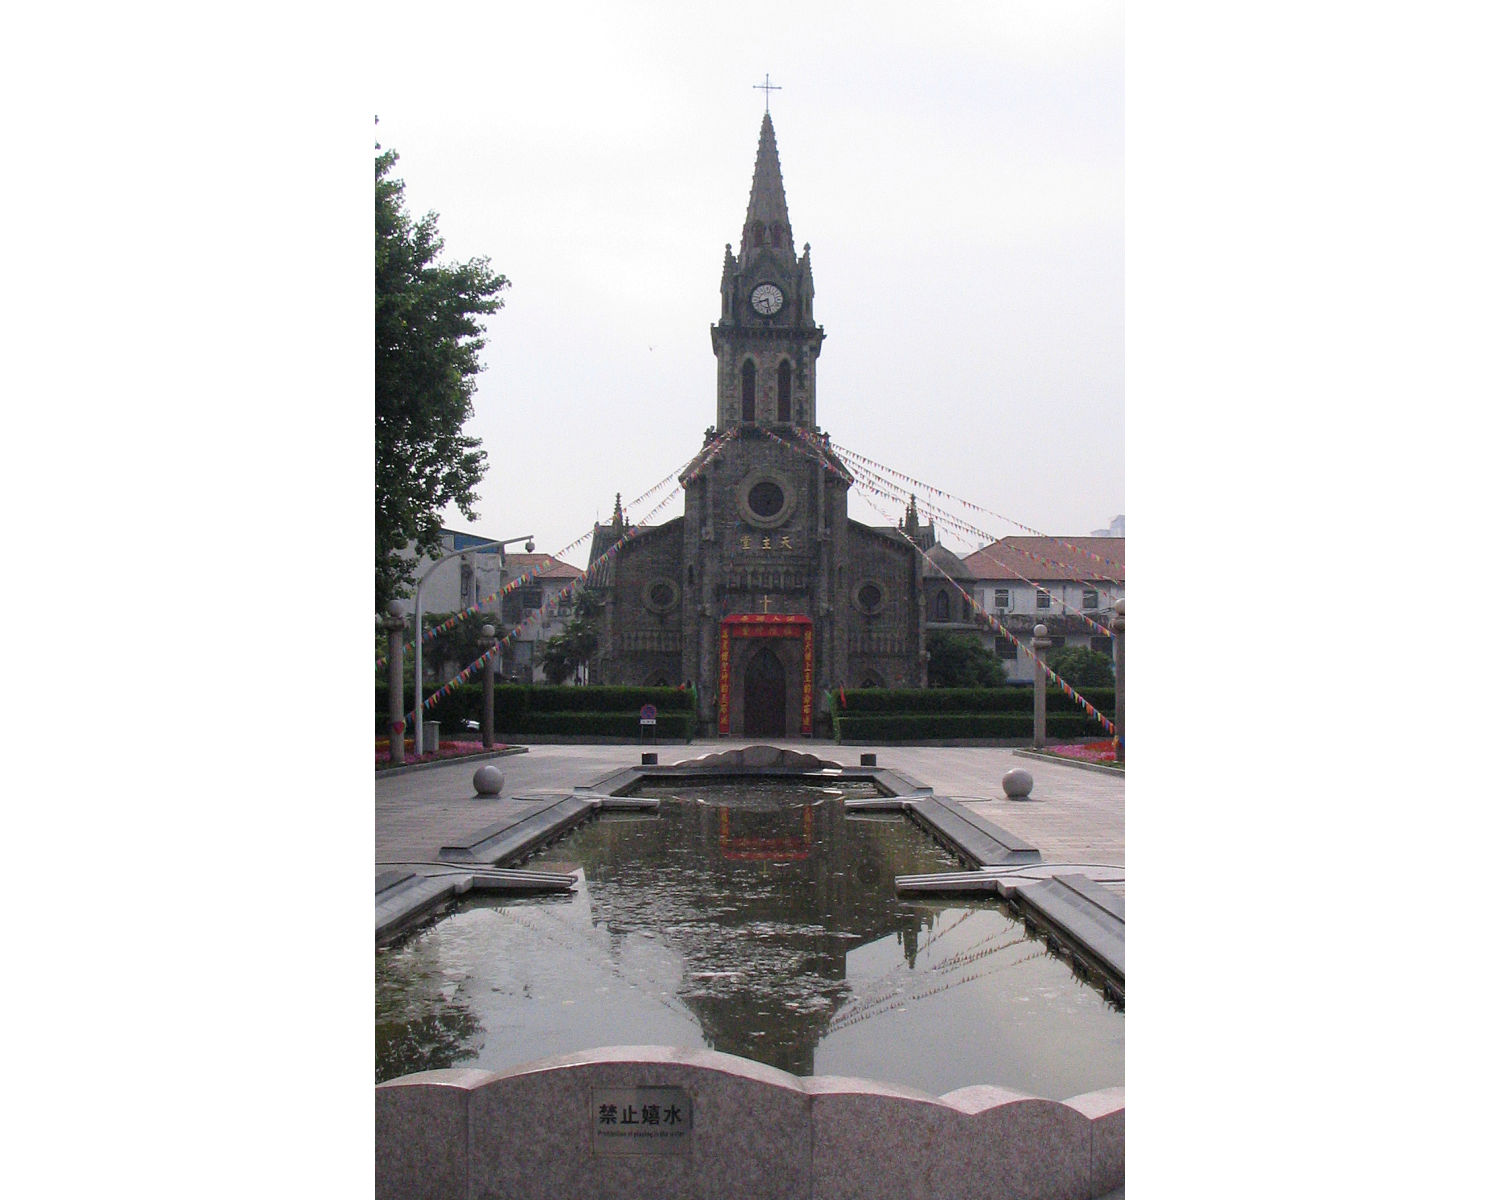 Jiangbei Catholic Church in Ningbo